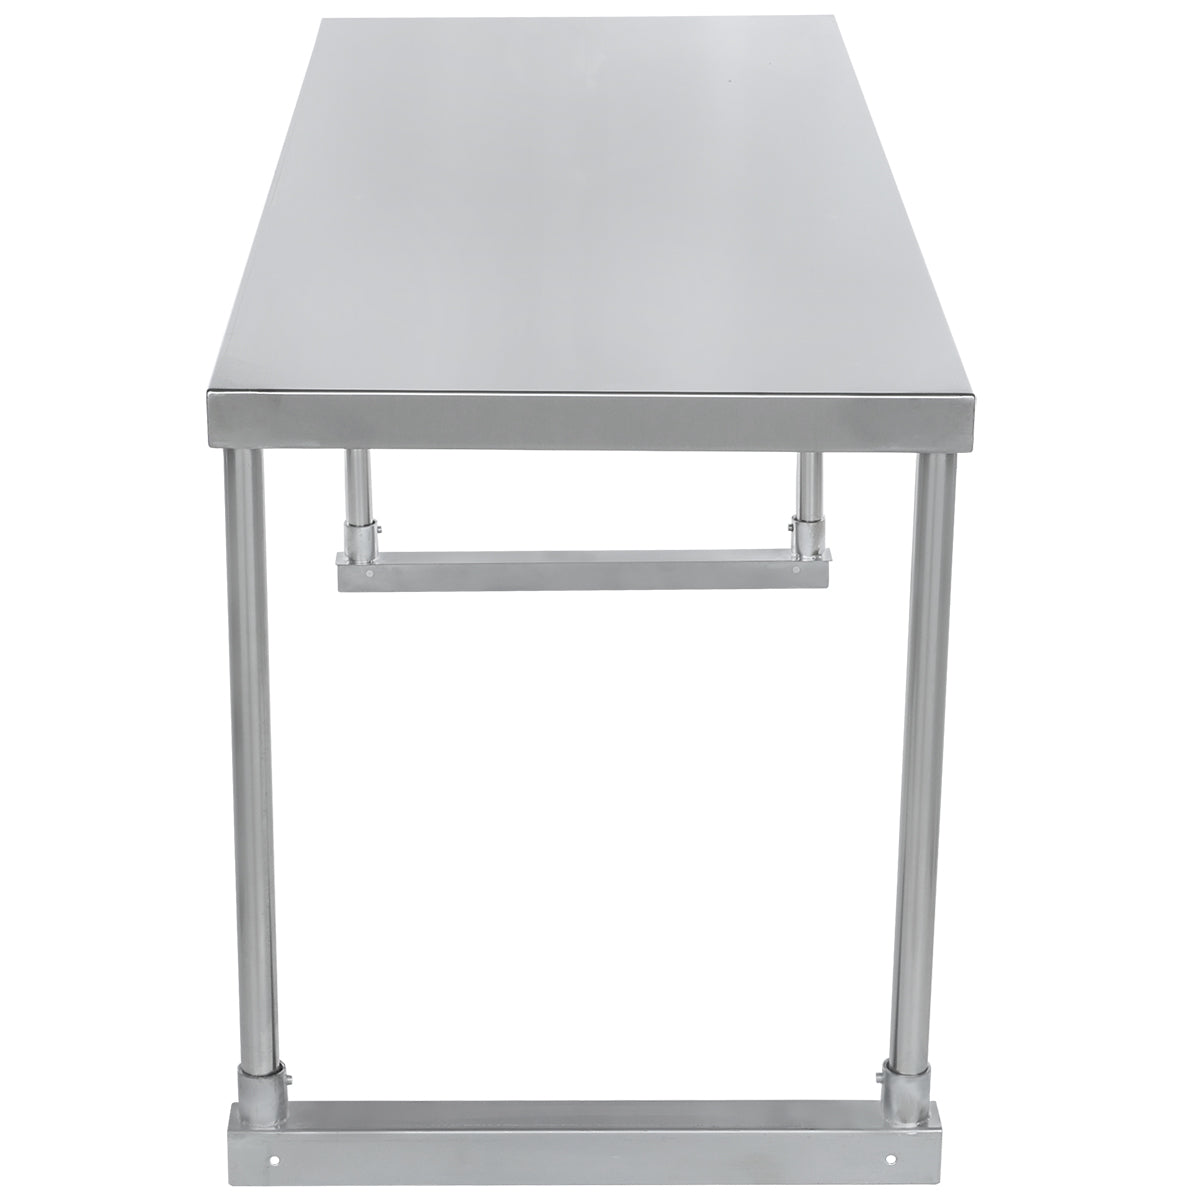 Empura ESOS1848 Overshelf Table-mounted Standard